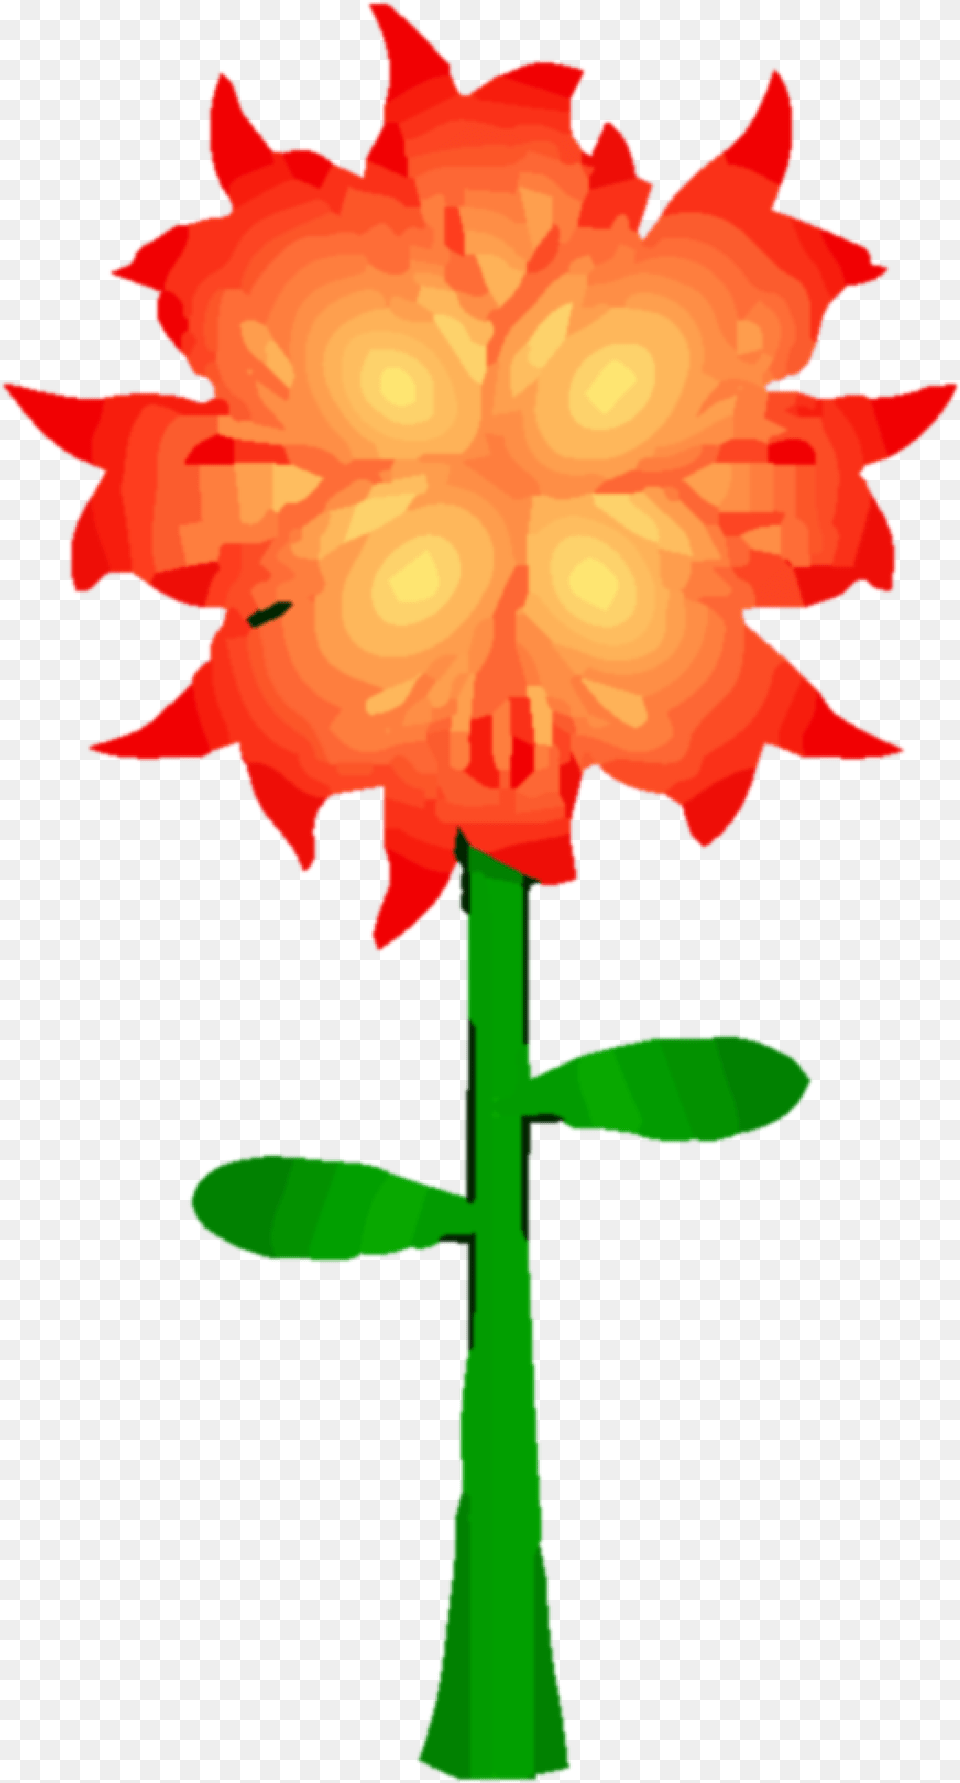 Fire Flower Clipart Fire Flower Clip Art, Dahlia, Plant, Petal, Animal Png Image